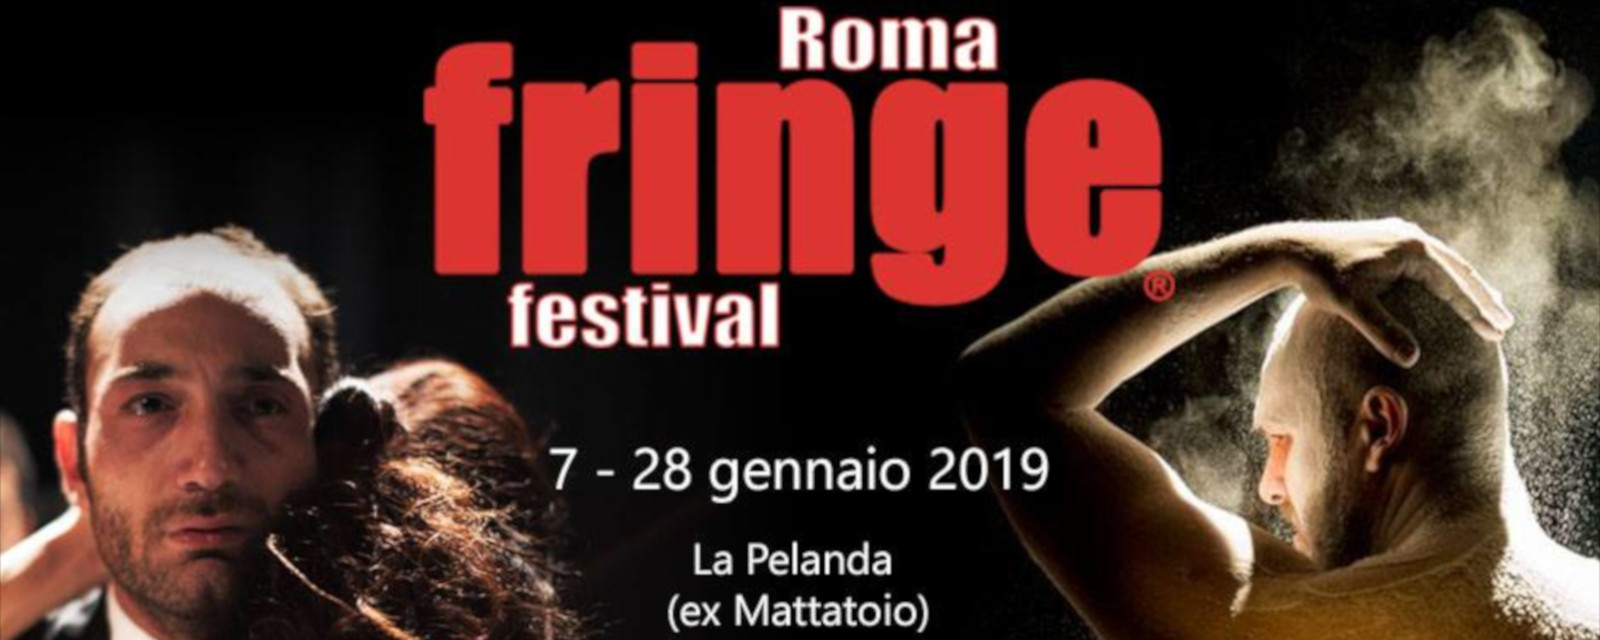 roma fringe festival